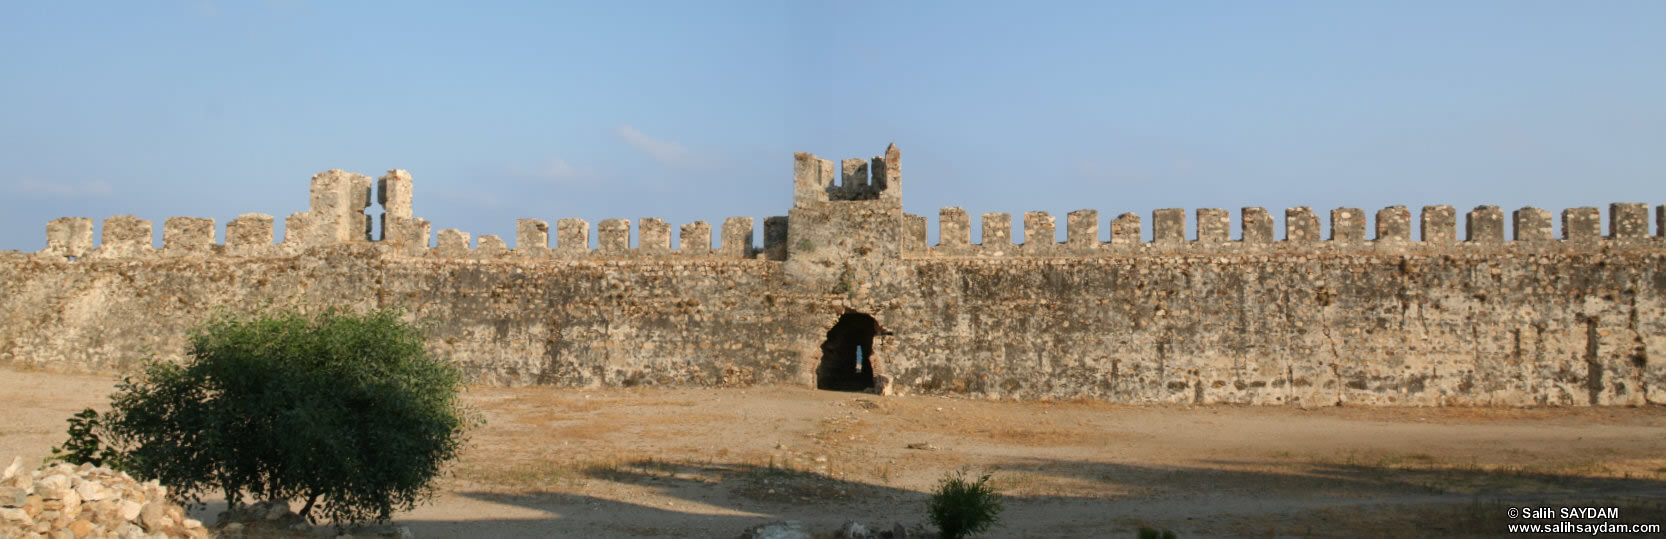 Anamur (Mamure) Castle Panorama 4 (Mersin, Anamur)